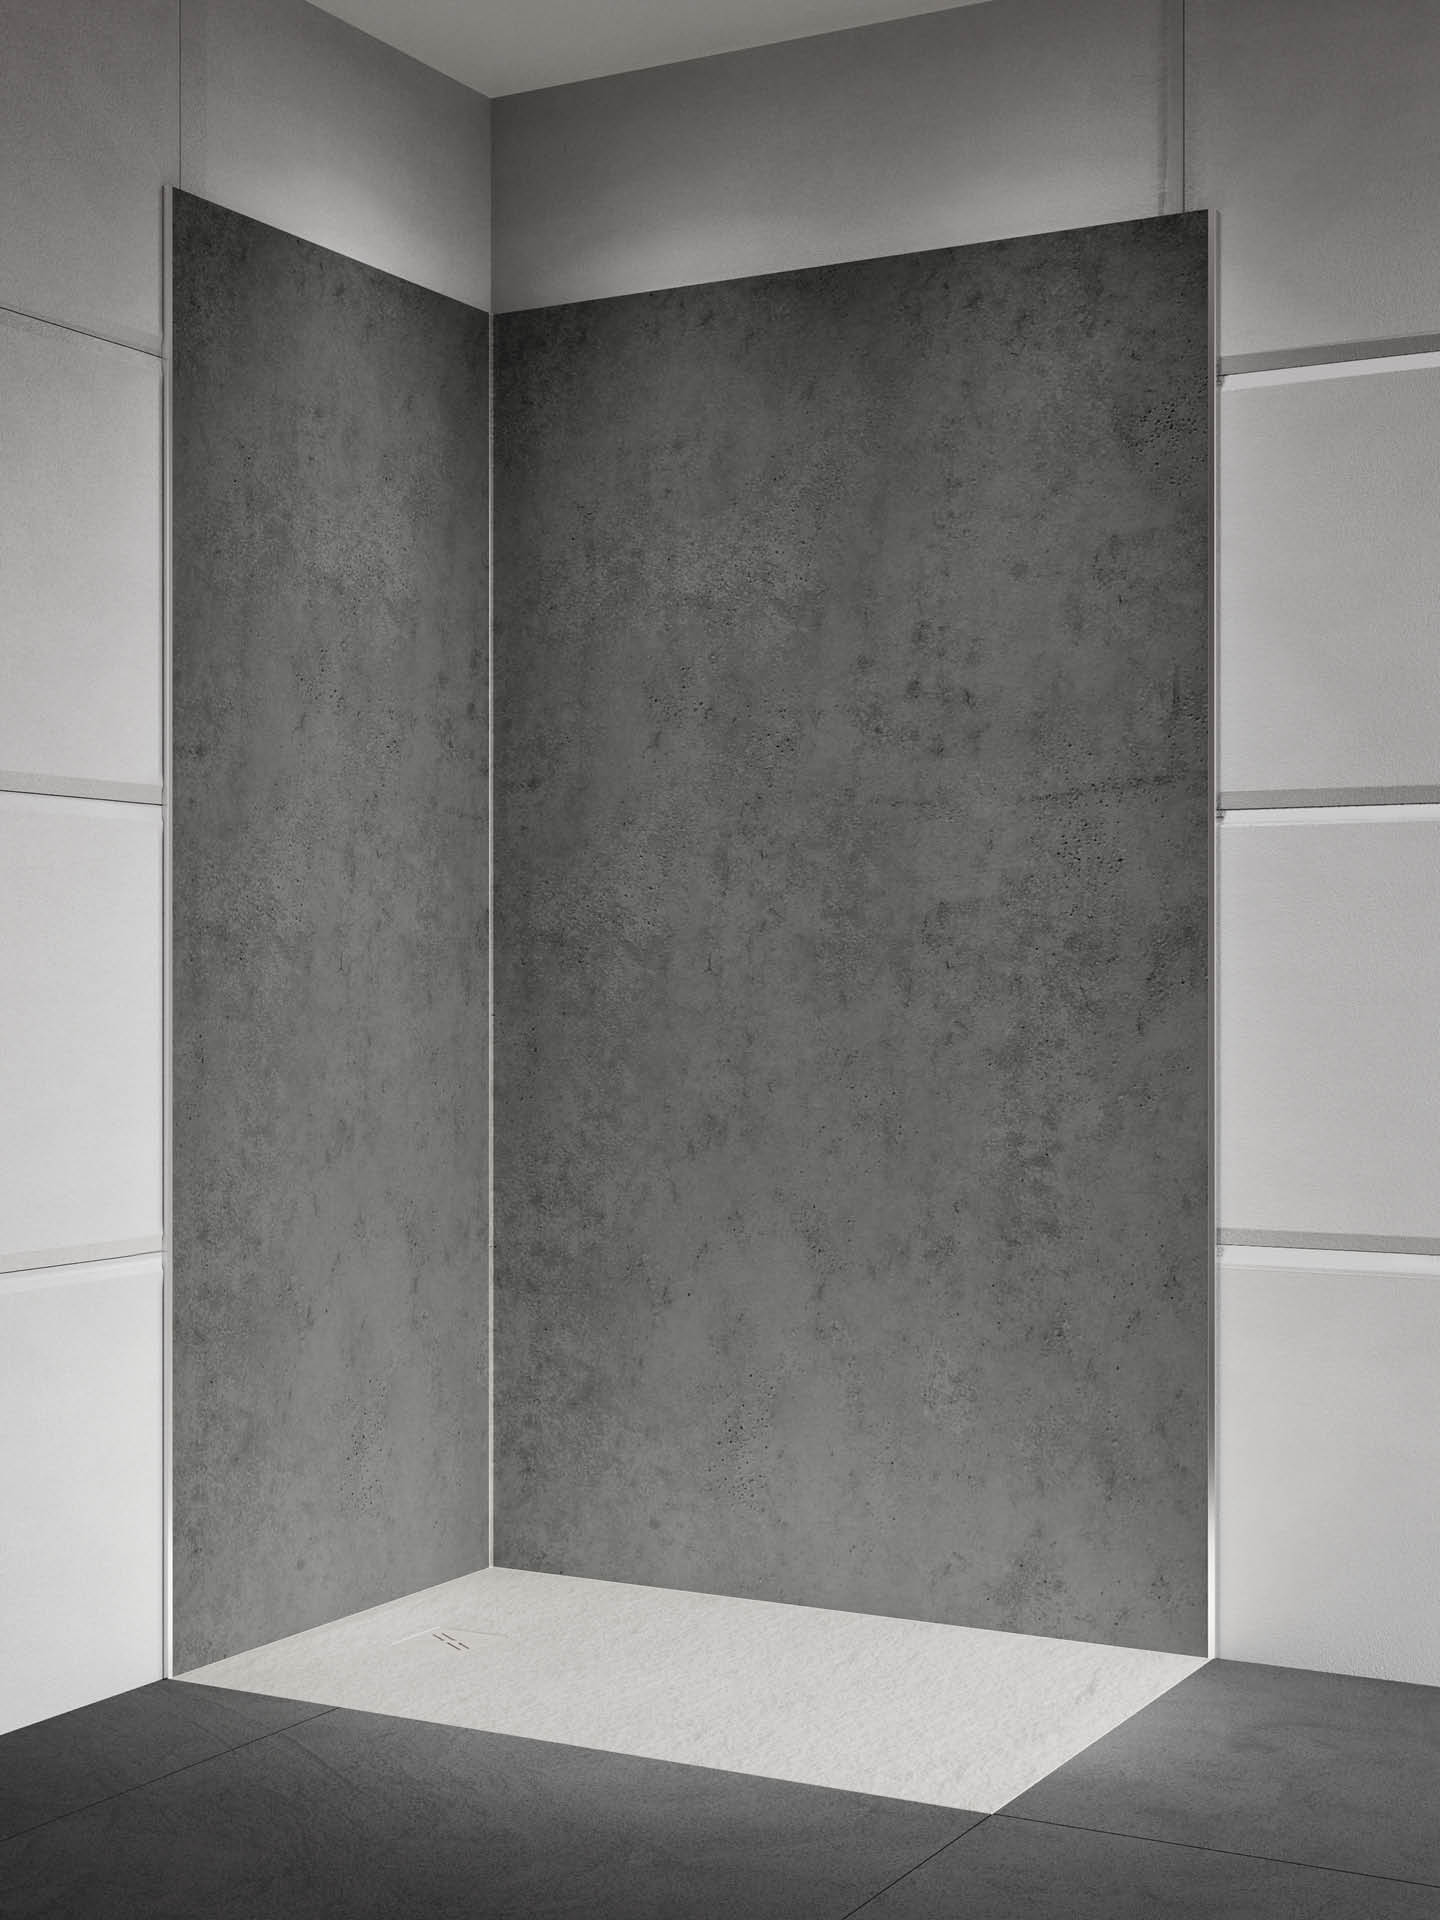 Boiserie Concrete con finitura simile al cemento, colore grigio